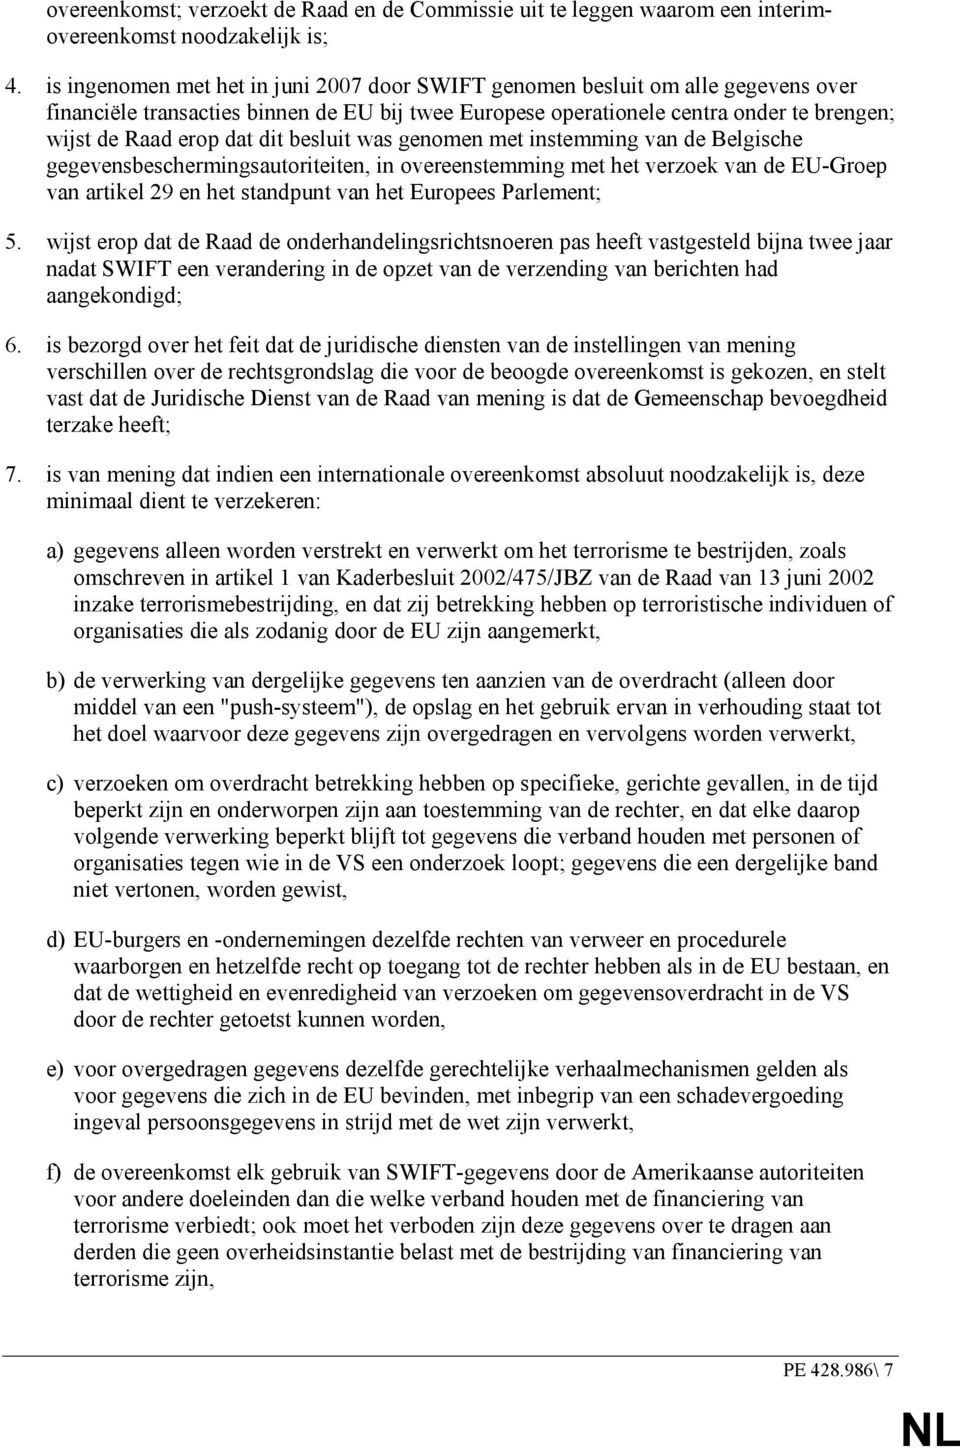 dit besluit was genomen met instemming van de Belgische gegevensbeschermingsautoriteiten, in overeenstemming met het verzoek van de EU-Groep van artikel 29 en het standpunt van het Europees